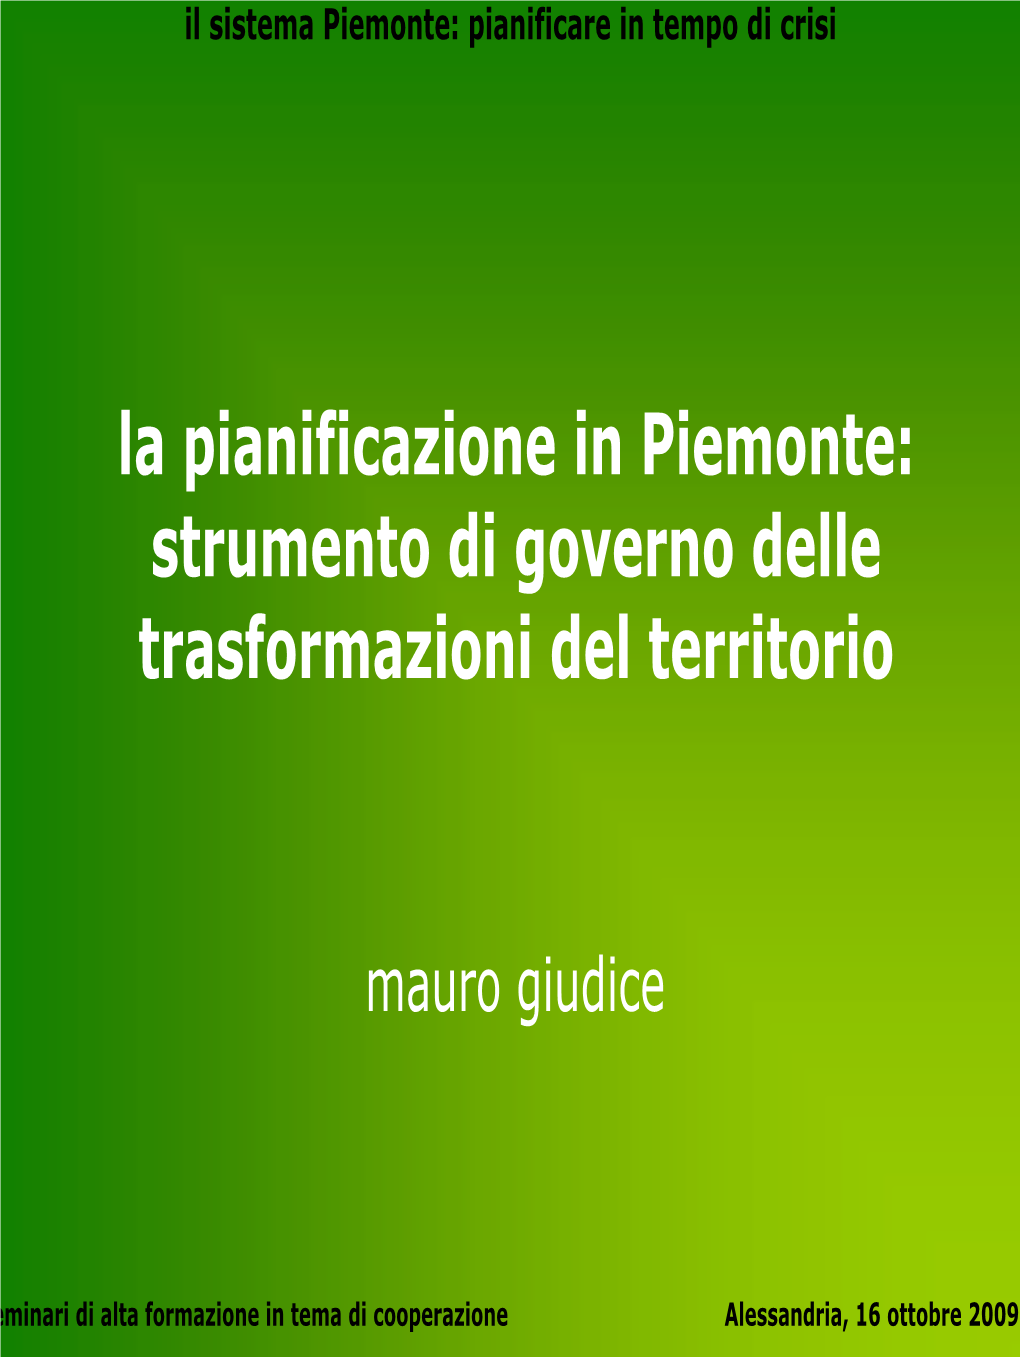 Il Sistema Piemonte: Pianificare in Tempo Di Crisi